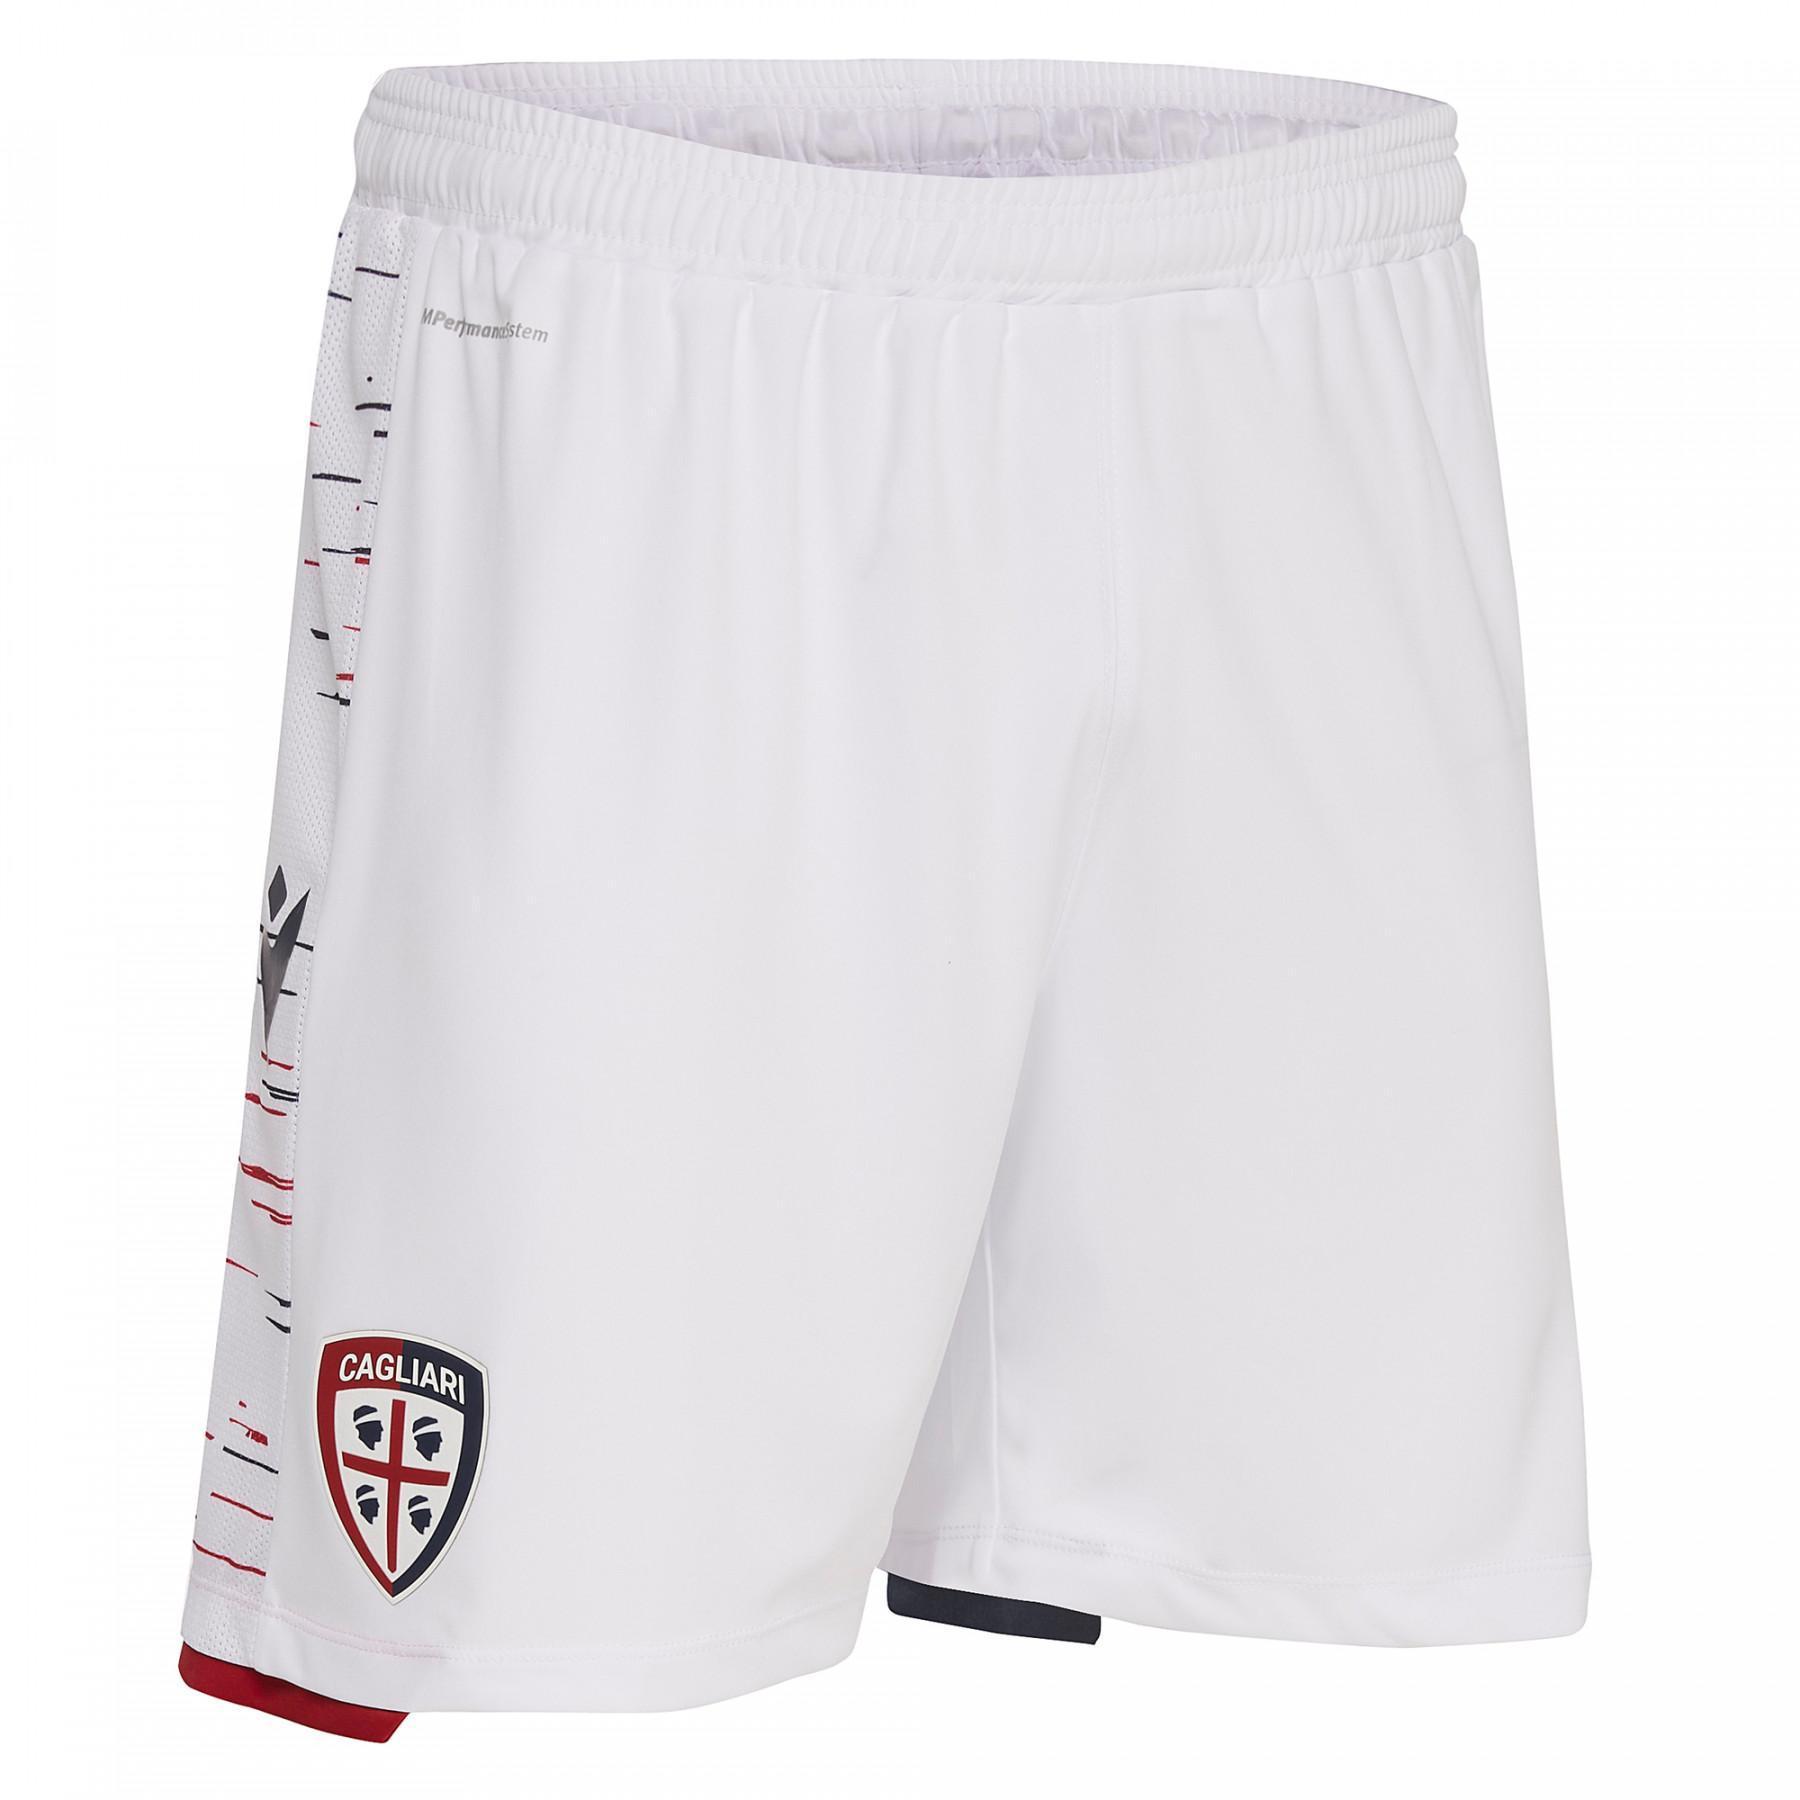 Outdoor shorts Cagliari Calcio 19/20